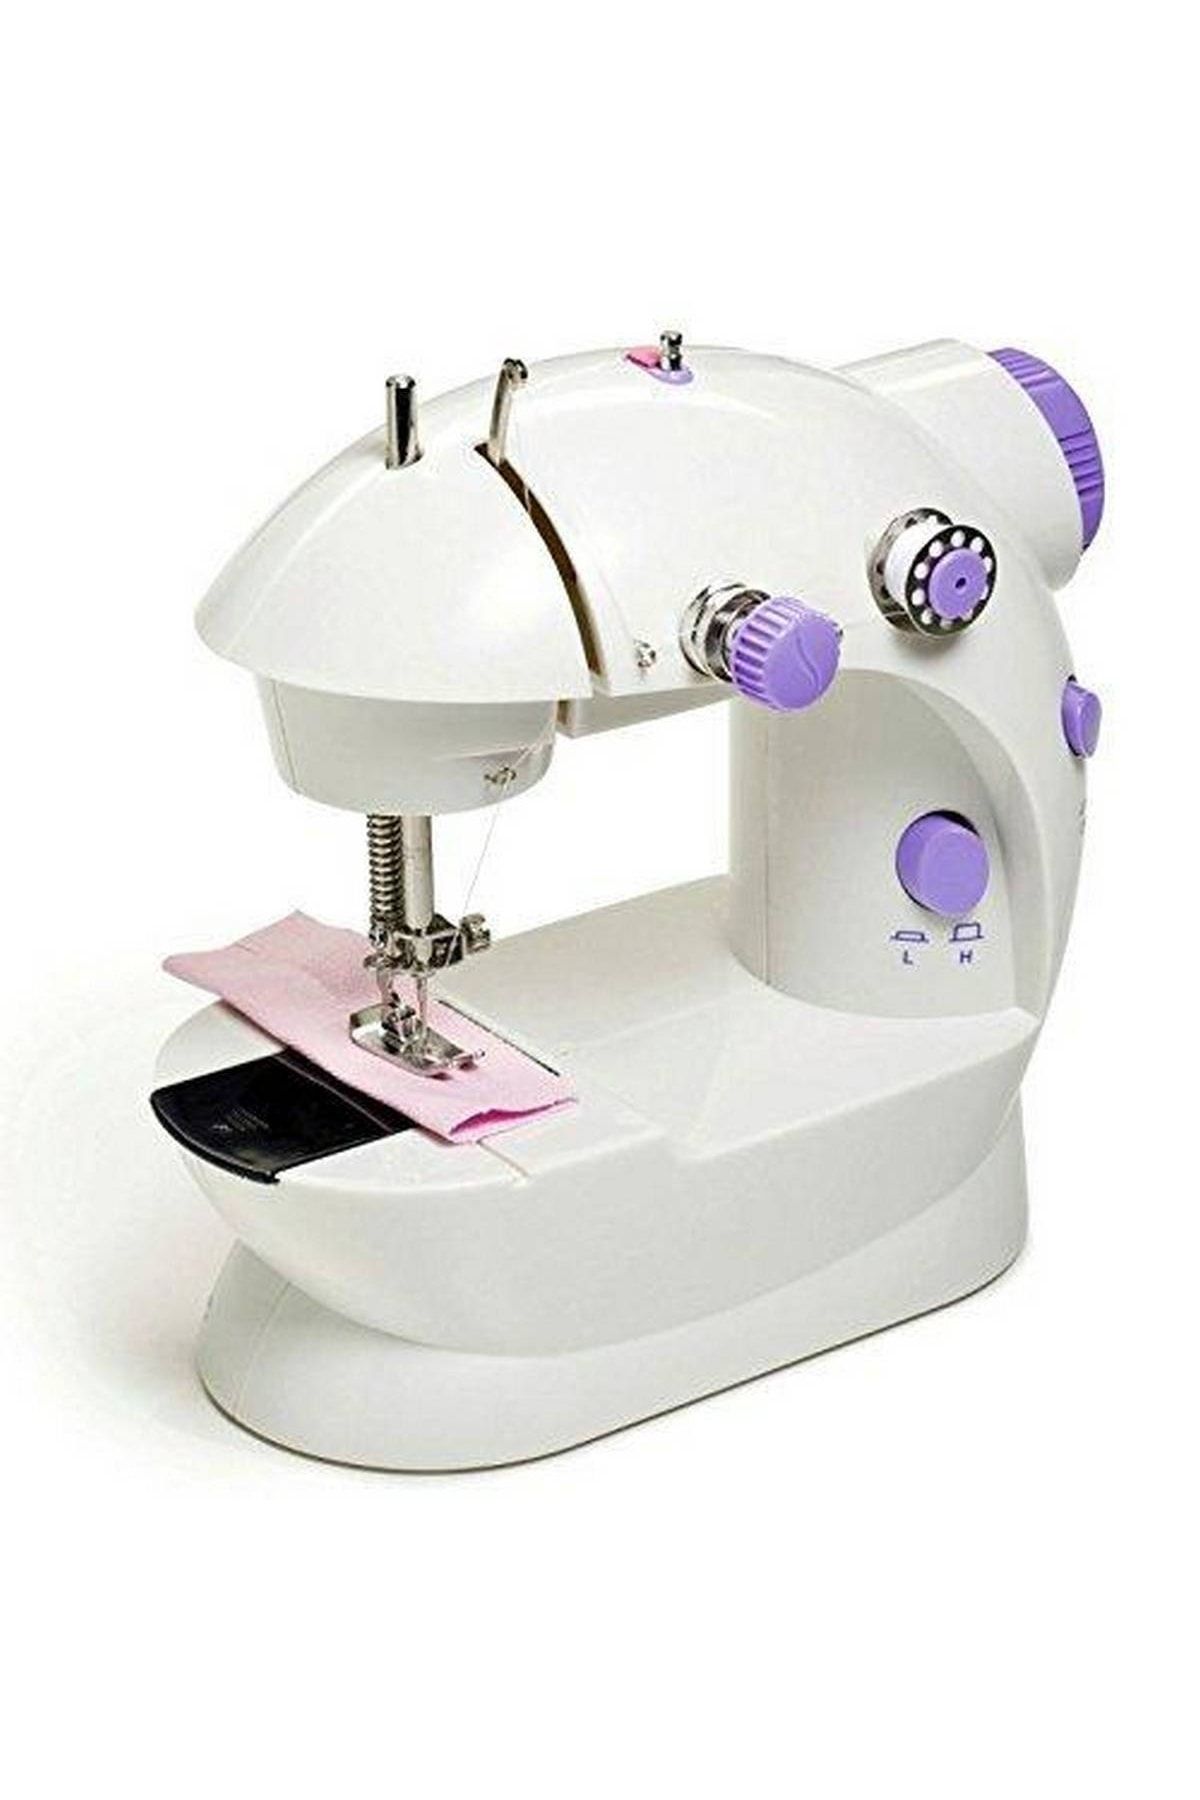 Купить недорогую швейную машинку для домашнего пользования. Mini Sewing Machine SM-202a. Мини швейная машина 4в1 Mini Sewing Machine. Швейная машинка Mini Sewing Machine SM-202a. Мини швейная машинка WB-126.